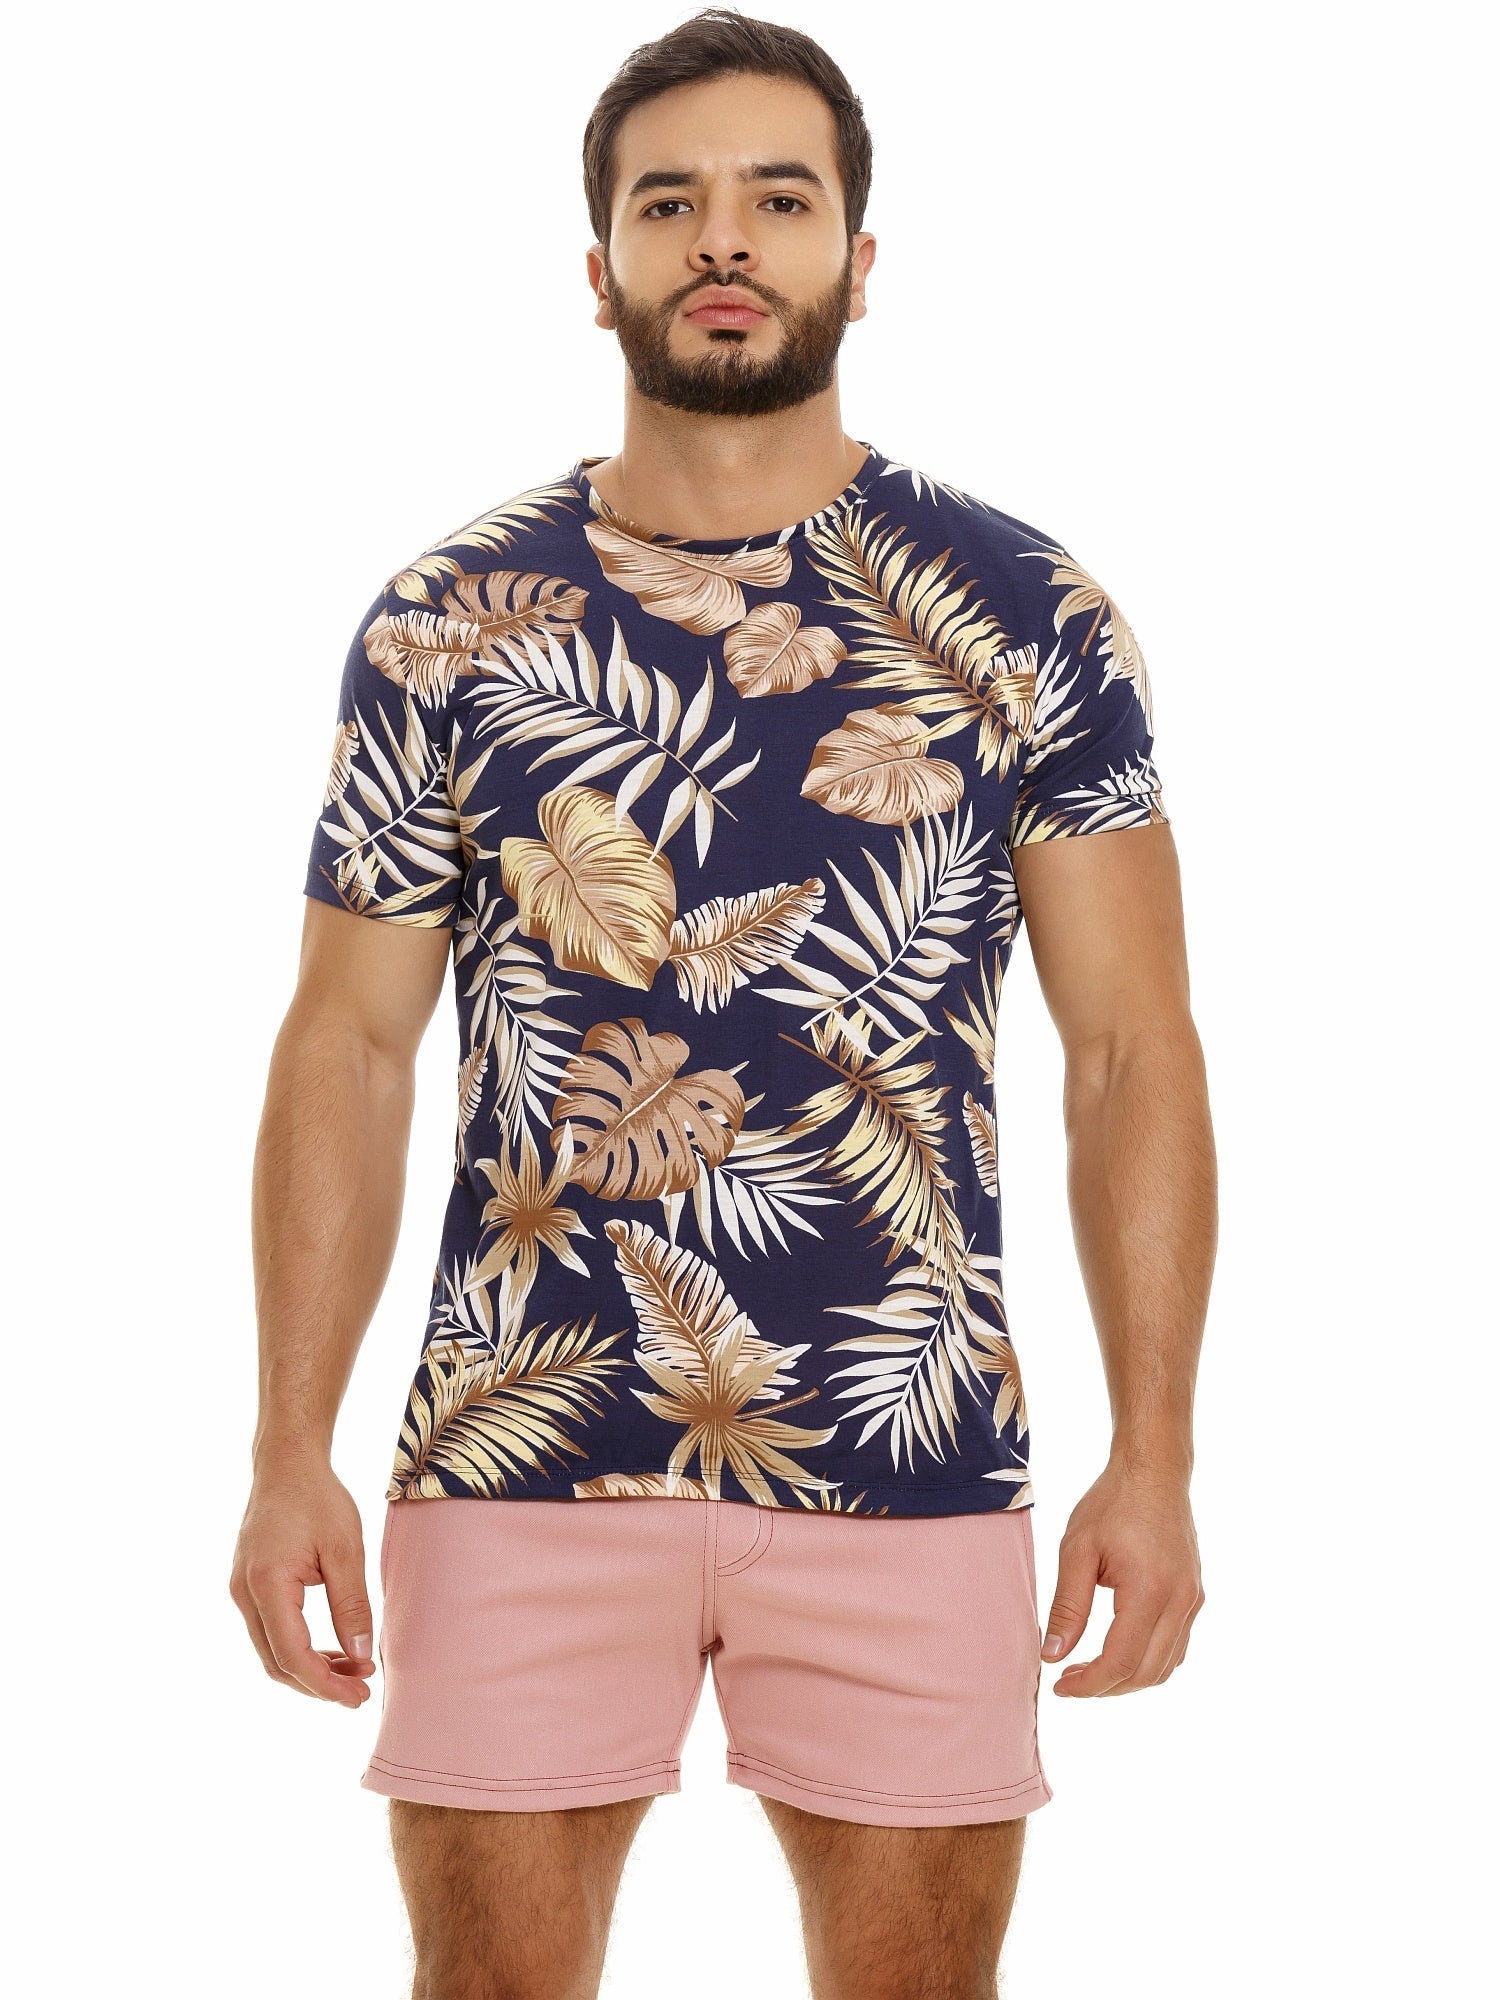 JOR 1772 PARADISE T-Shirt bedruckt Kurzarm Shirt mit Motiv Surferstyle Blumen - noodosz